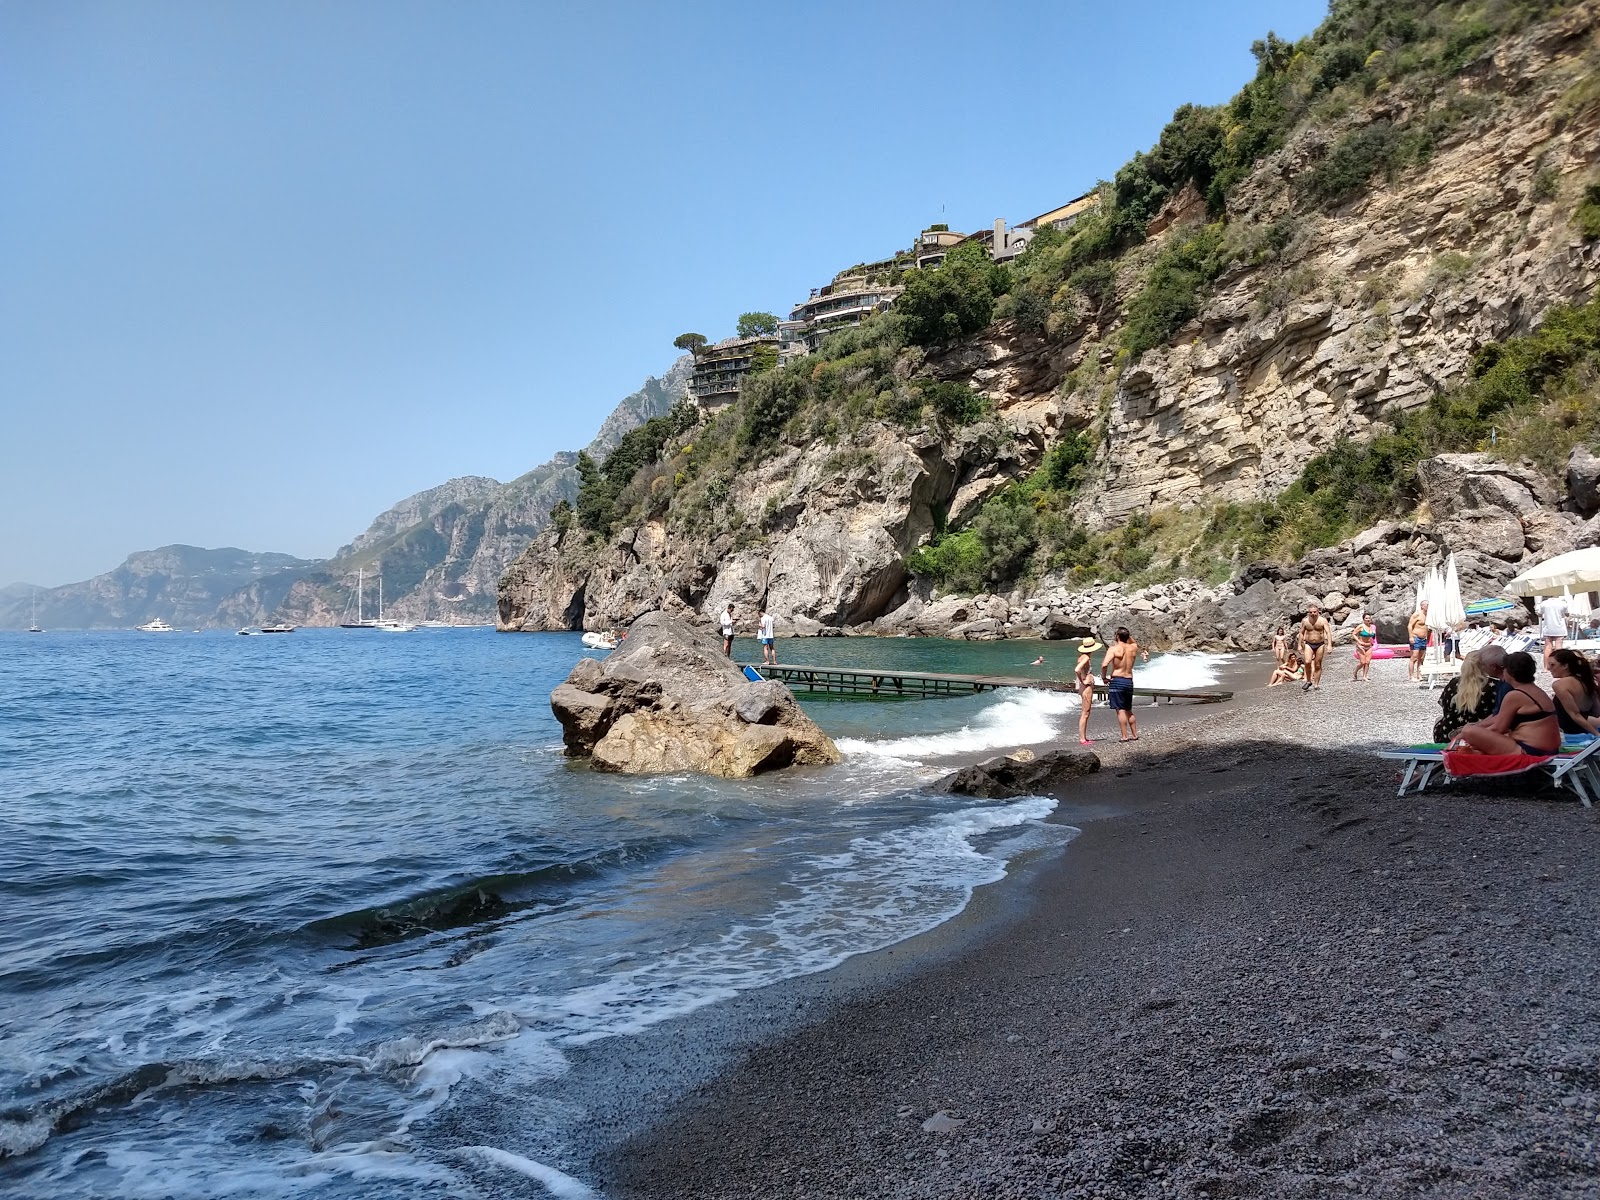 Spiaggia di via Laurito'in fotoğrafı gri ince çakıl taş yüzey ile